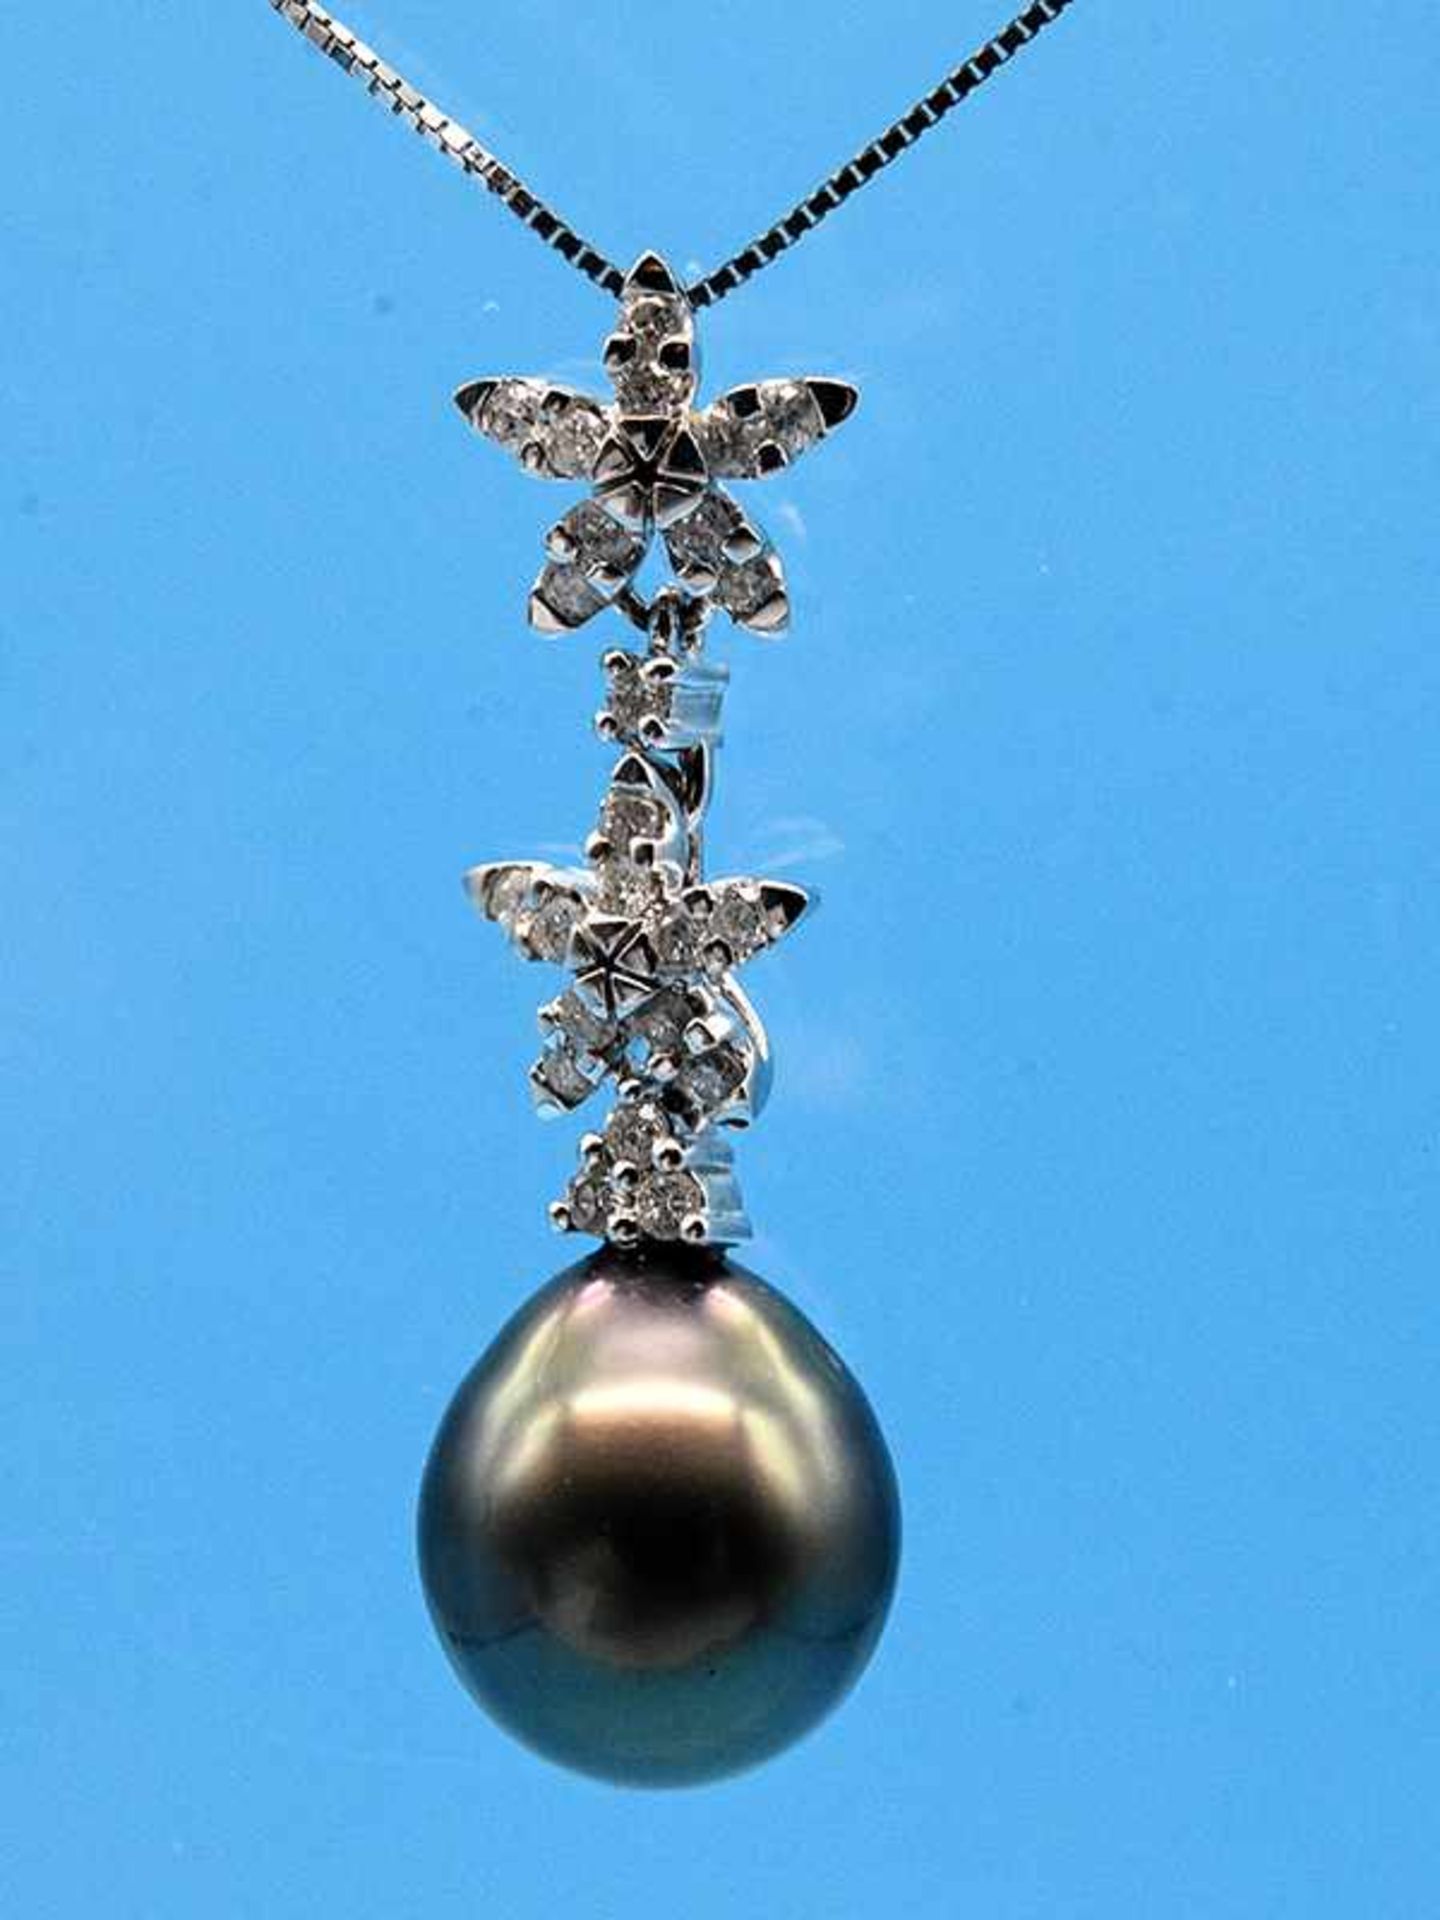 Anhänger mit grauer Tahiti-Perle und 24 kleinen Diamanten, zusammen ca. 0,12 ct, 20. Jh. 585/-